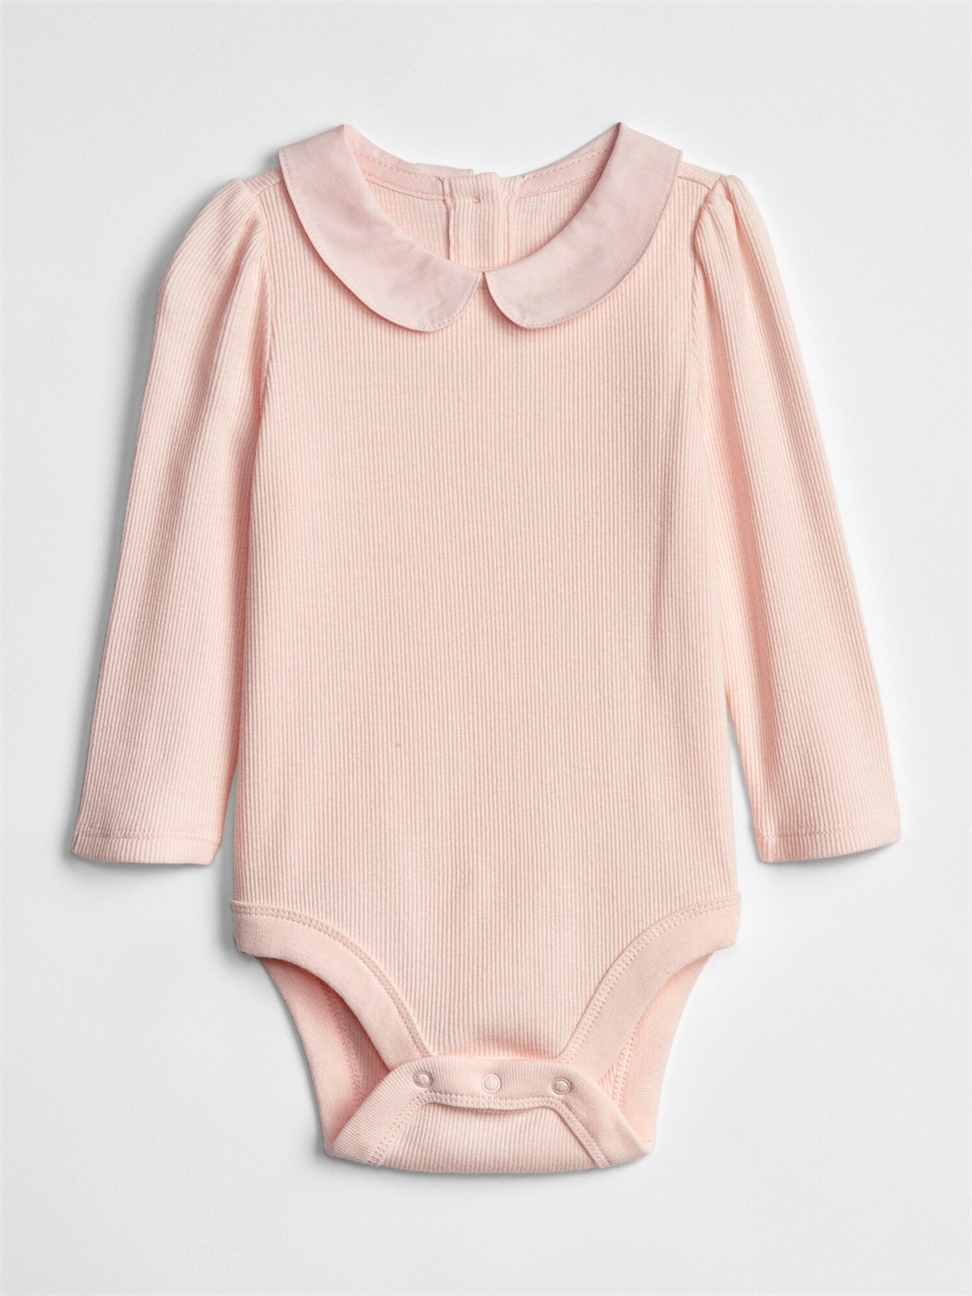 嬰兒裝|柔軟羅紋彼得潘領長袖包屁衣-淺粉色